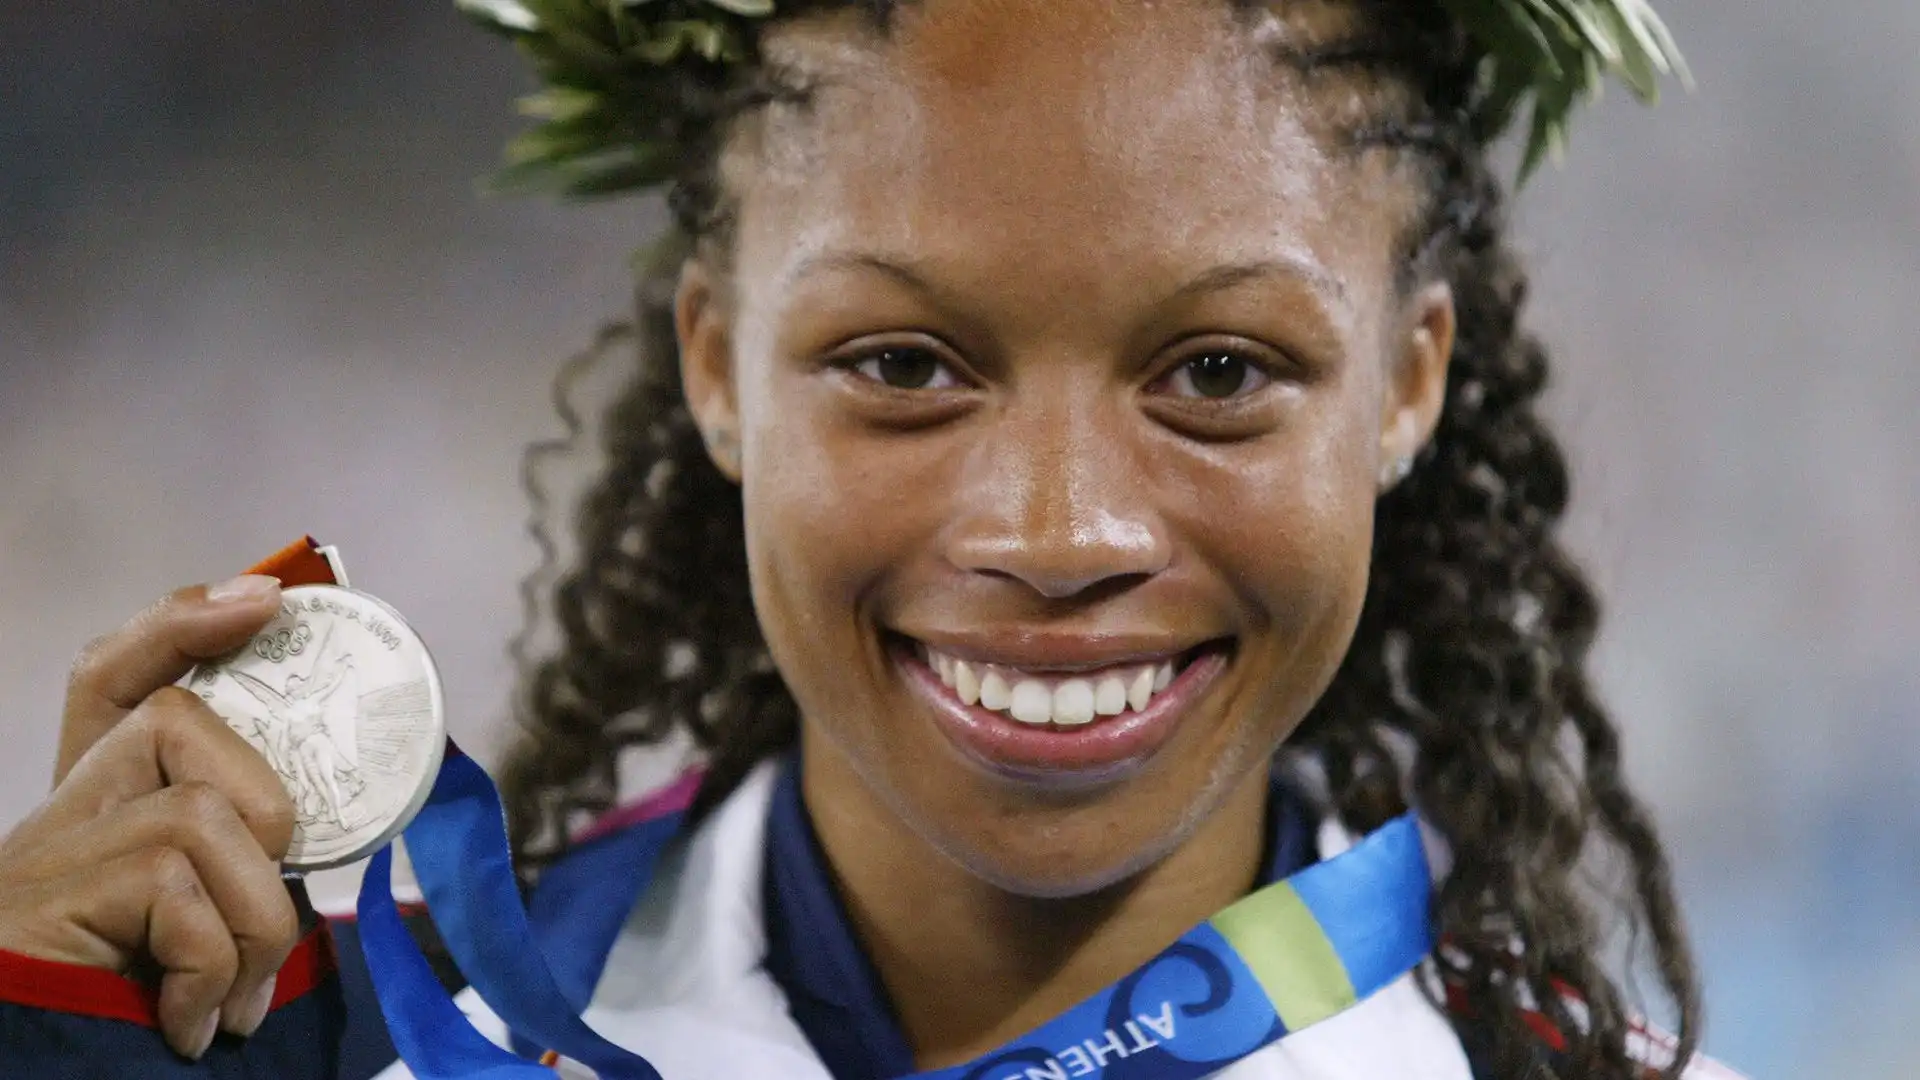 Nel corso della sua carriera, Allyson Felix ha conquistato 9 medaglie d'oro ai Campionati mondiali di atletica leggera